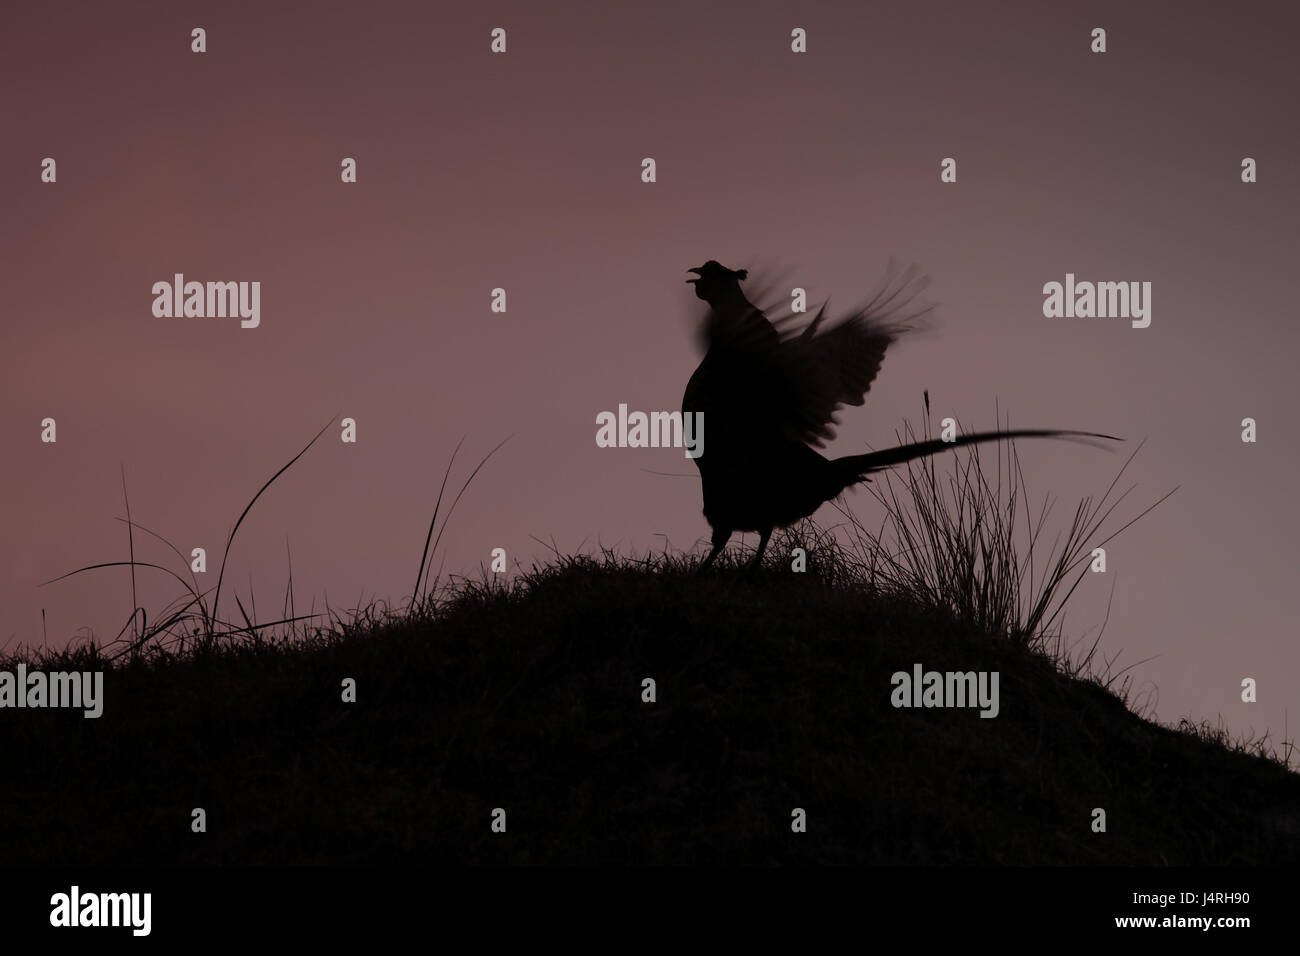 Fagiano, Phasianus colchicus, anteprima, corte, sbattimento di ali, motion blur, erba hill, silhouette, cielo di sera, contrasto Foto Stock